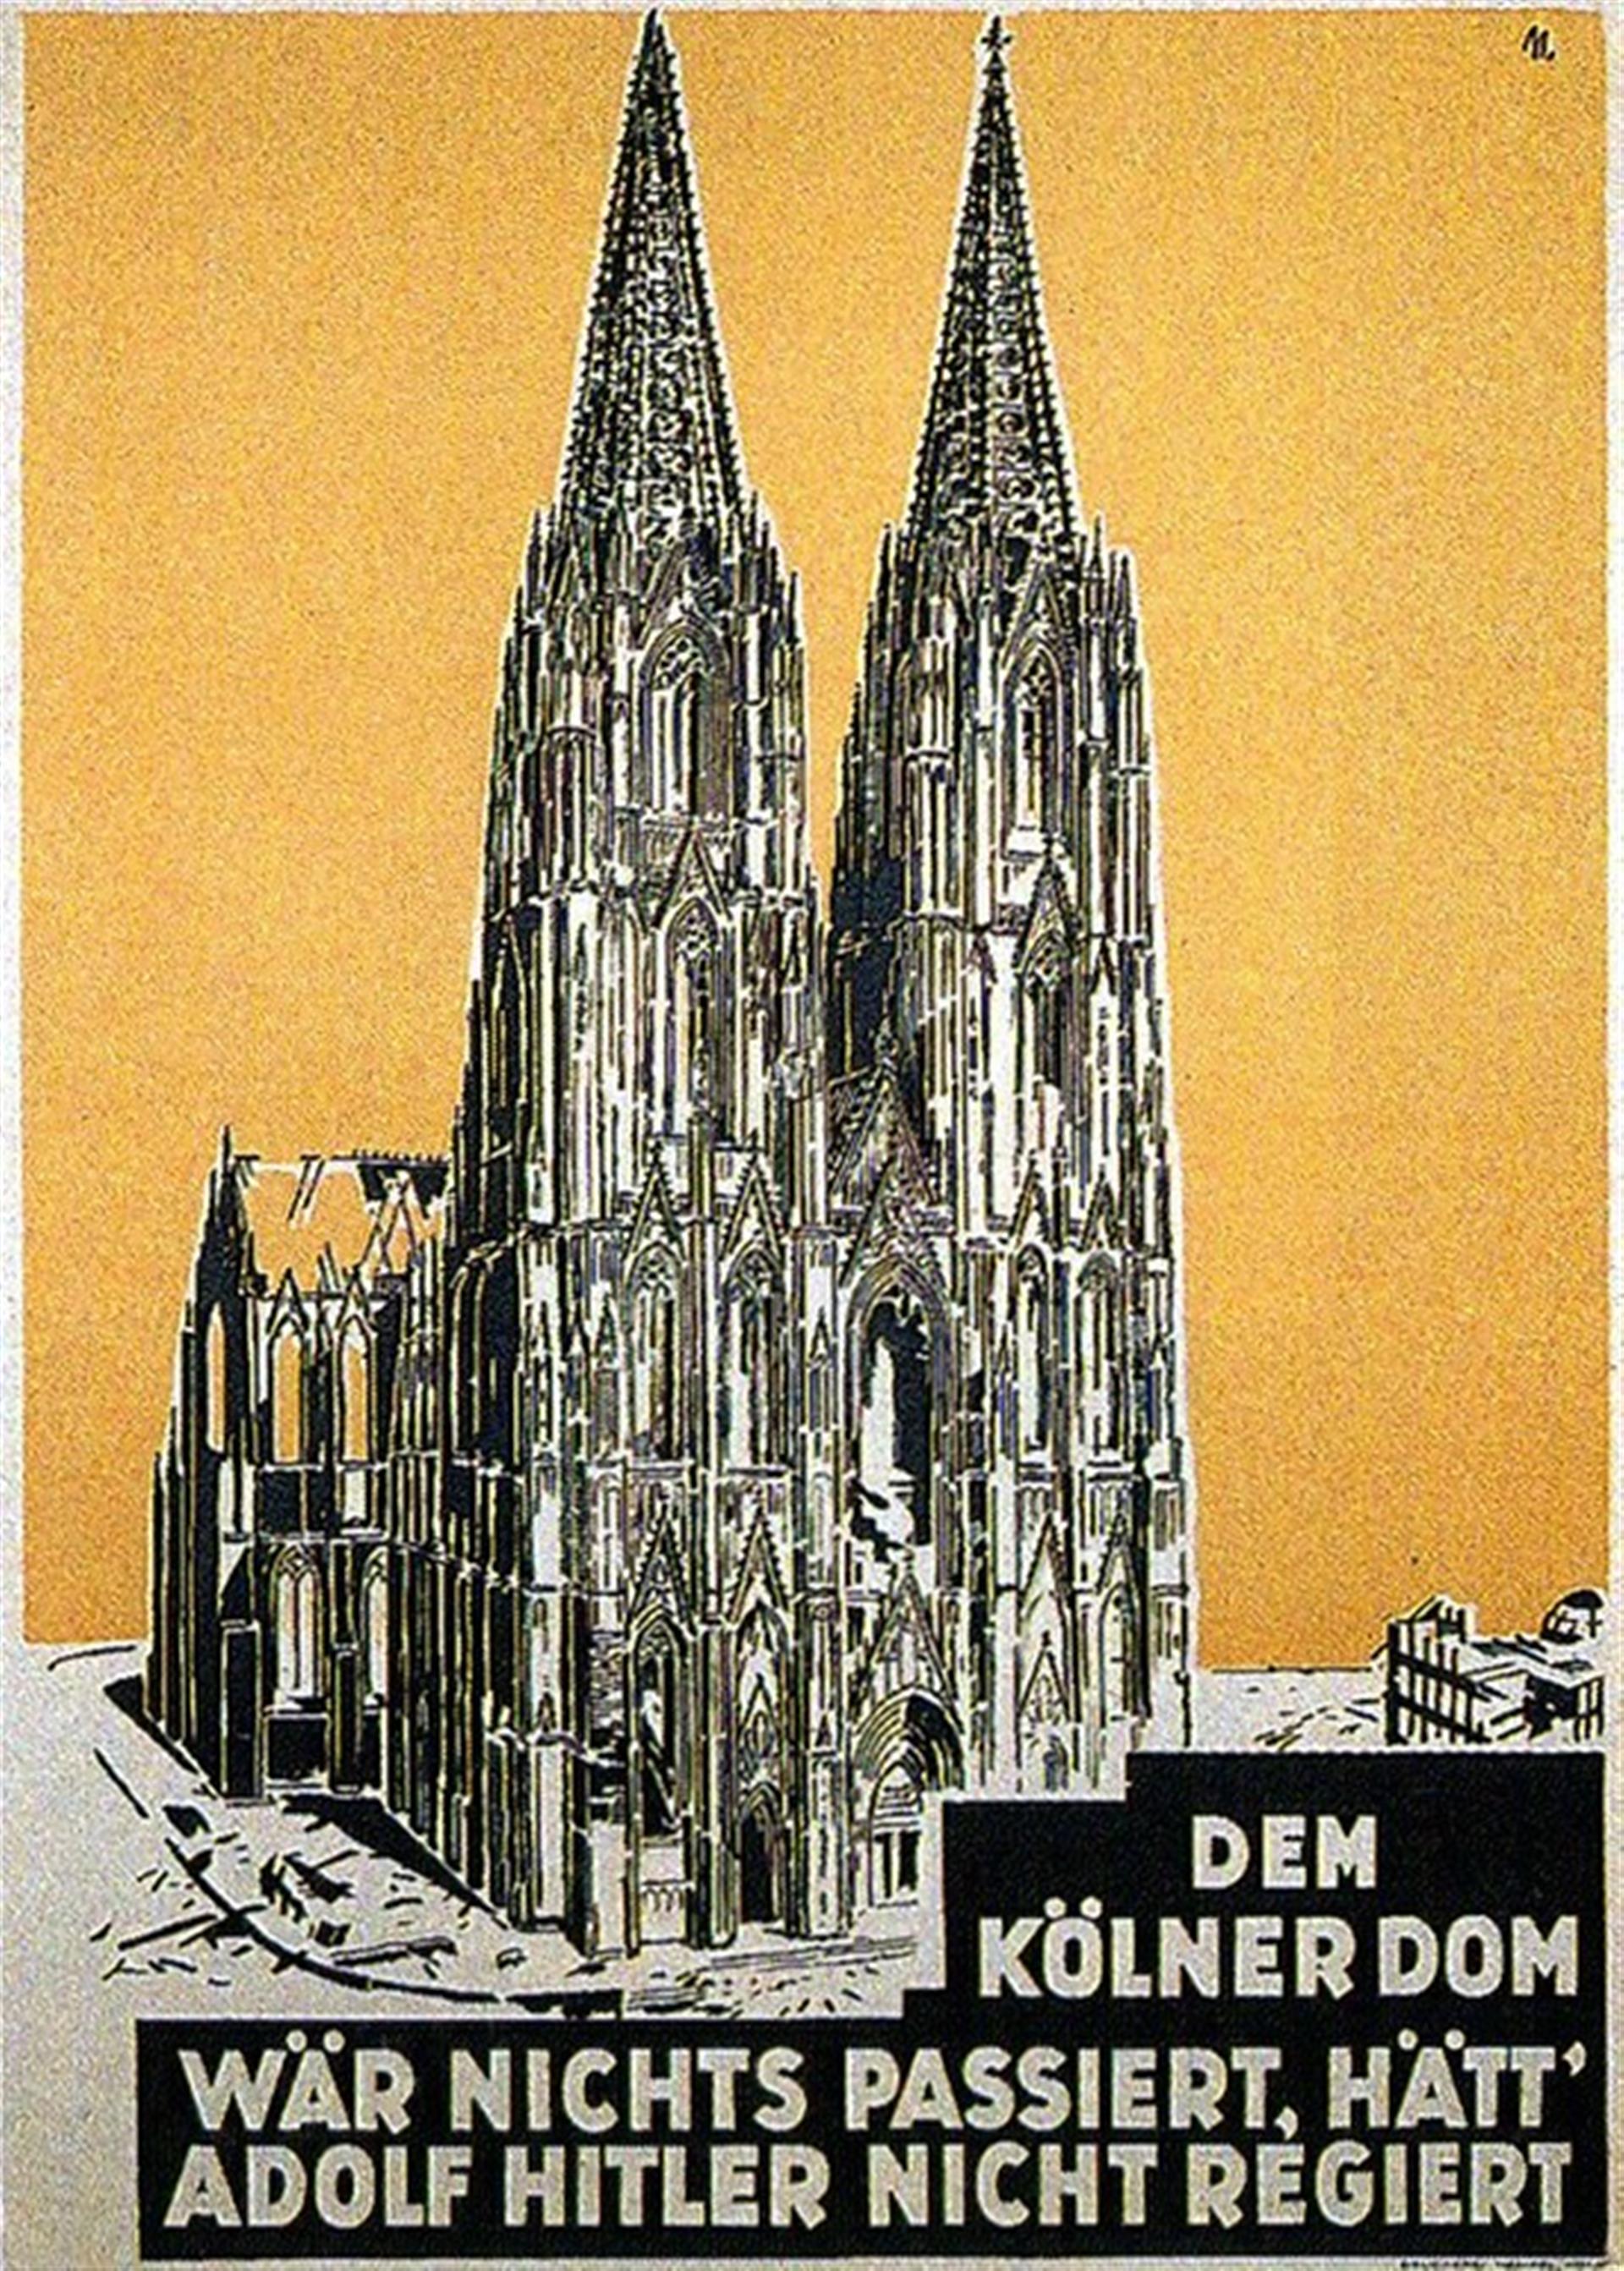 Zeichnung des im Zweiten Weltkrieg stark beschädigten Kölner Doms auf einem Plakat (um 1946), untertitelt ist die Abbildung mit "Dem Kölner Dom wär nichts passiert, hätt' Adolf Hitler nicht regiert". &copy; unbekannt